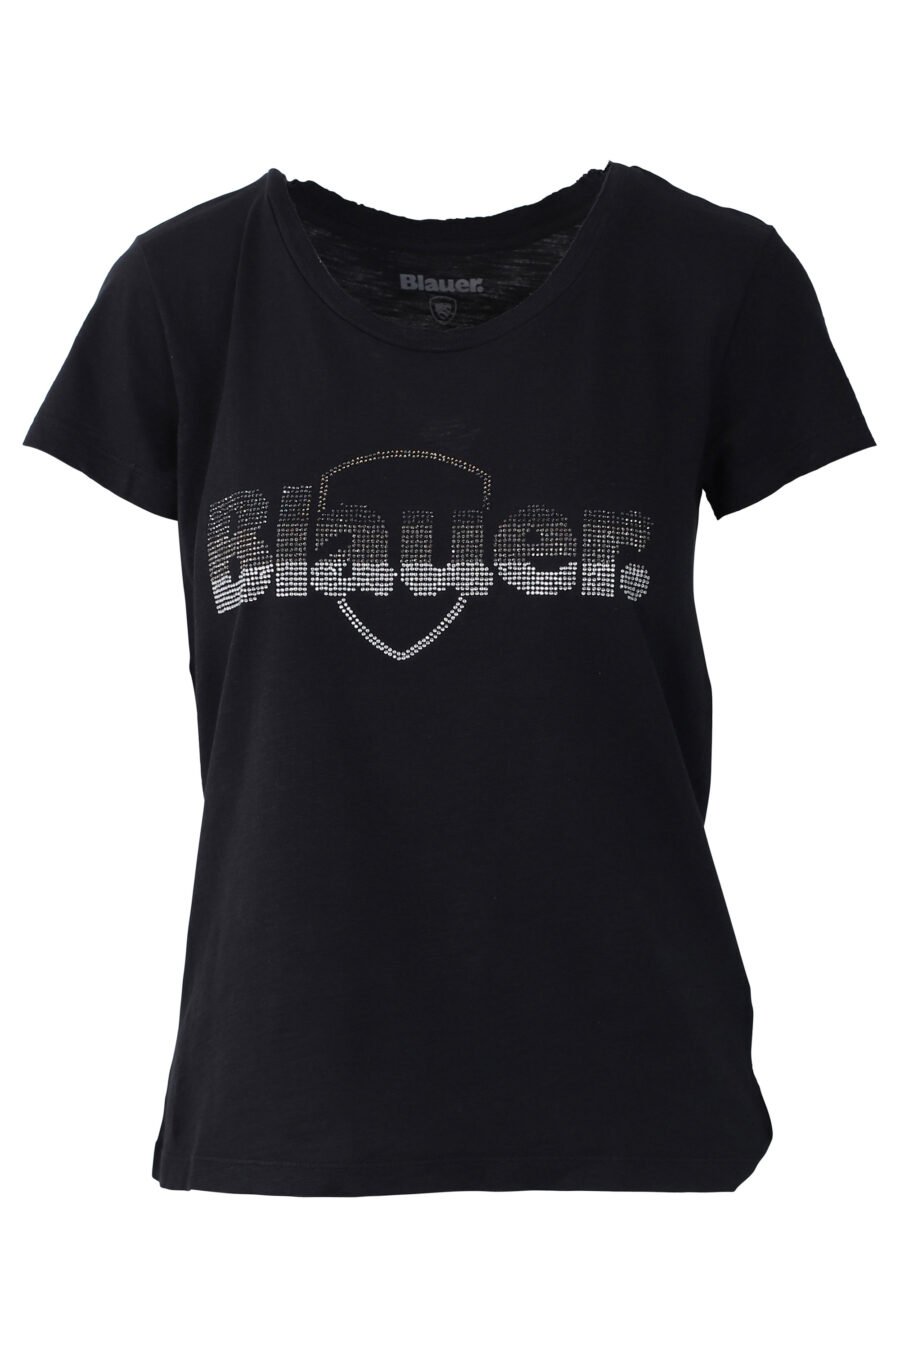 Camiseta negra con maxilogo bordado en strass - IMG 0660